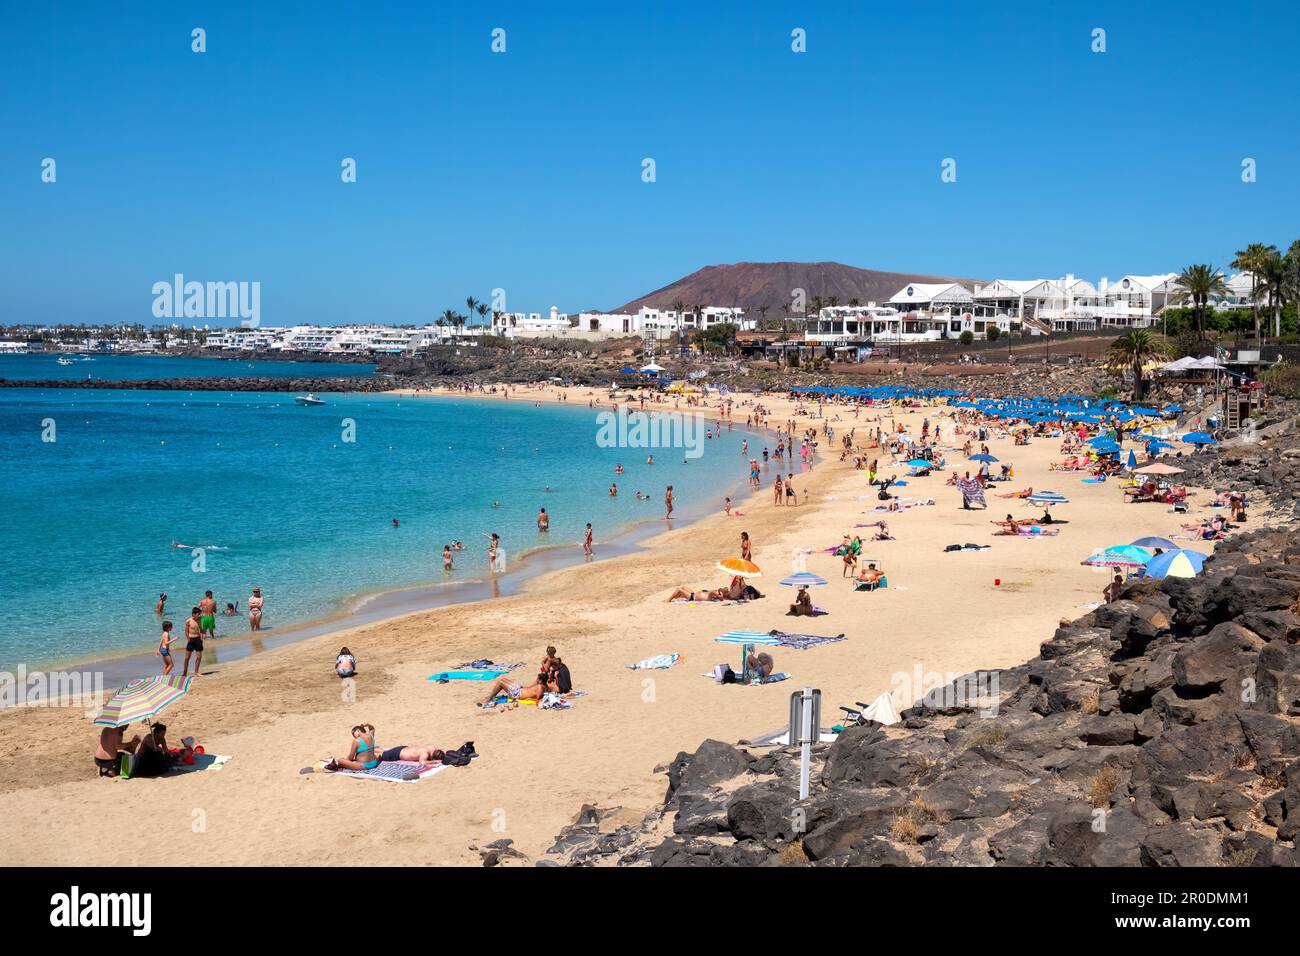 Blick auf Playa Dorada Beach, Playa Blanca, Lanzarote. Es ist ein warmer, sonniger Tag mit Urlaubern, die die Sonne an einem goldenen Strand genießen Stockfoto